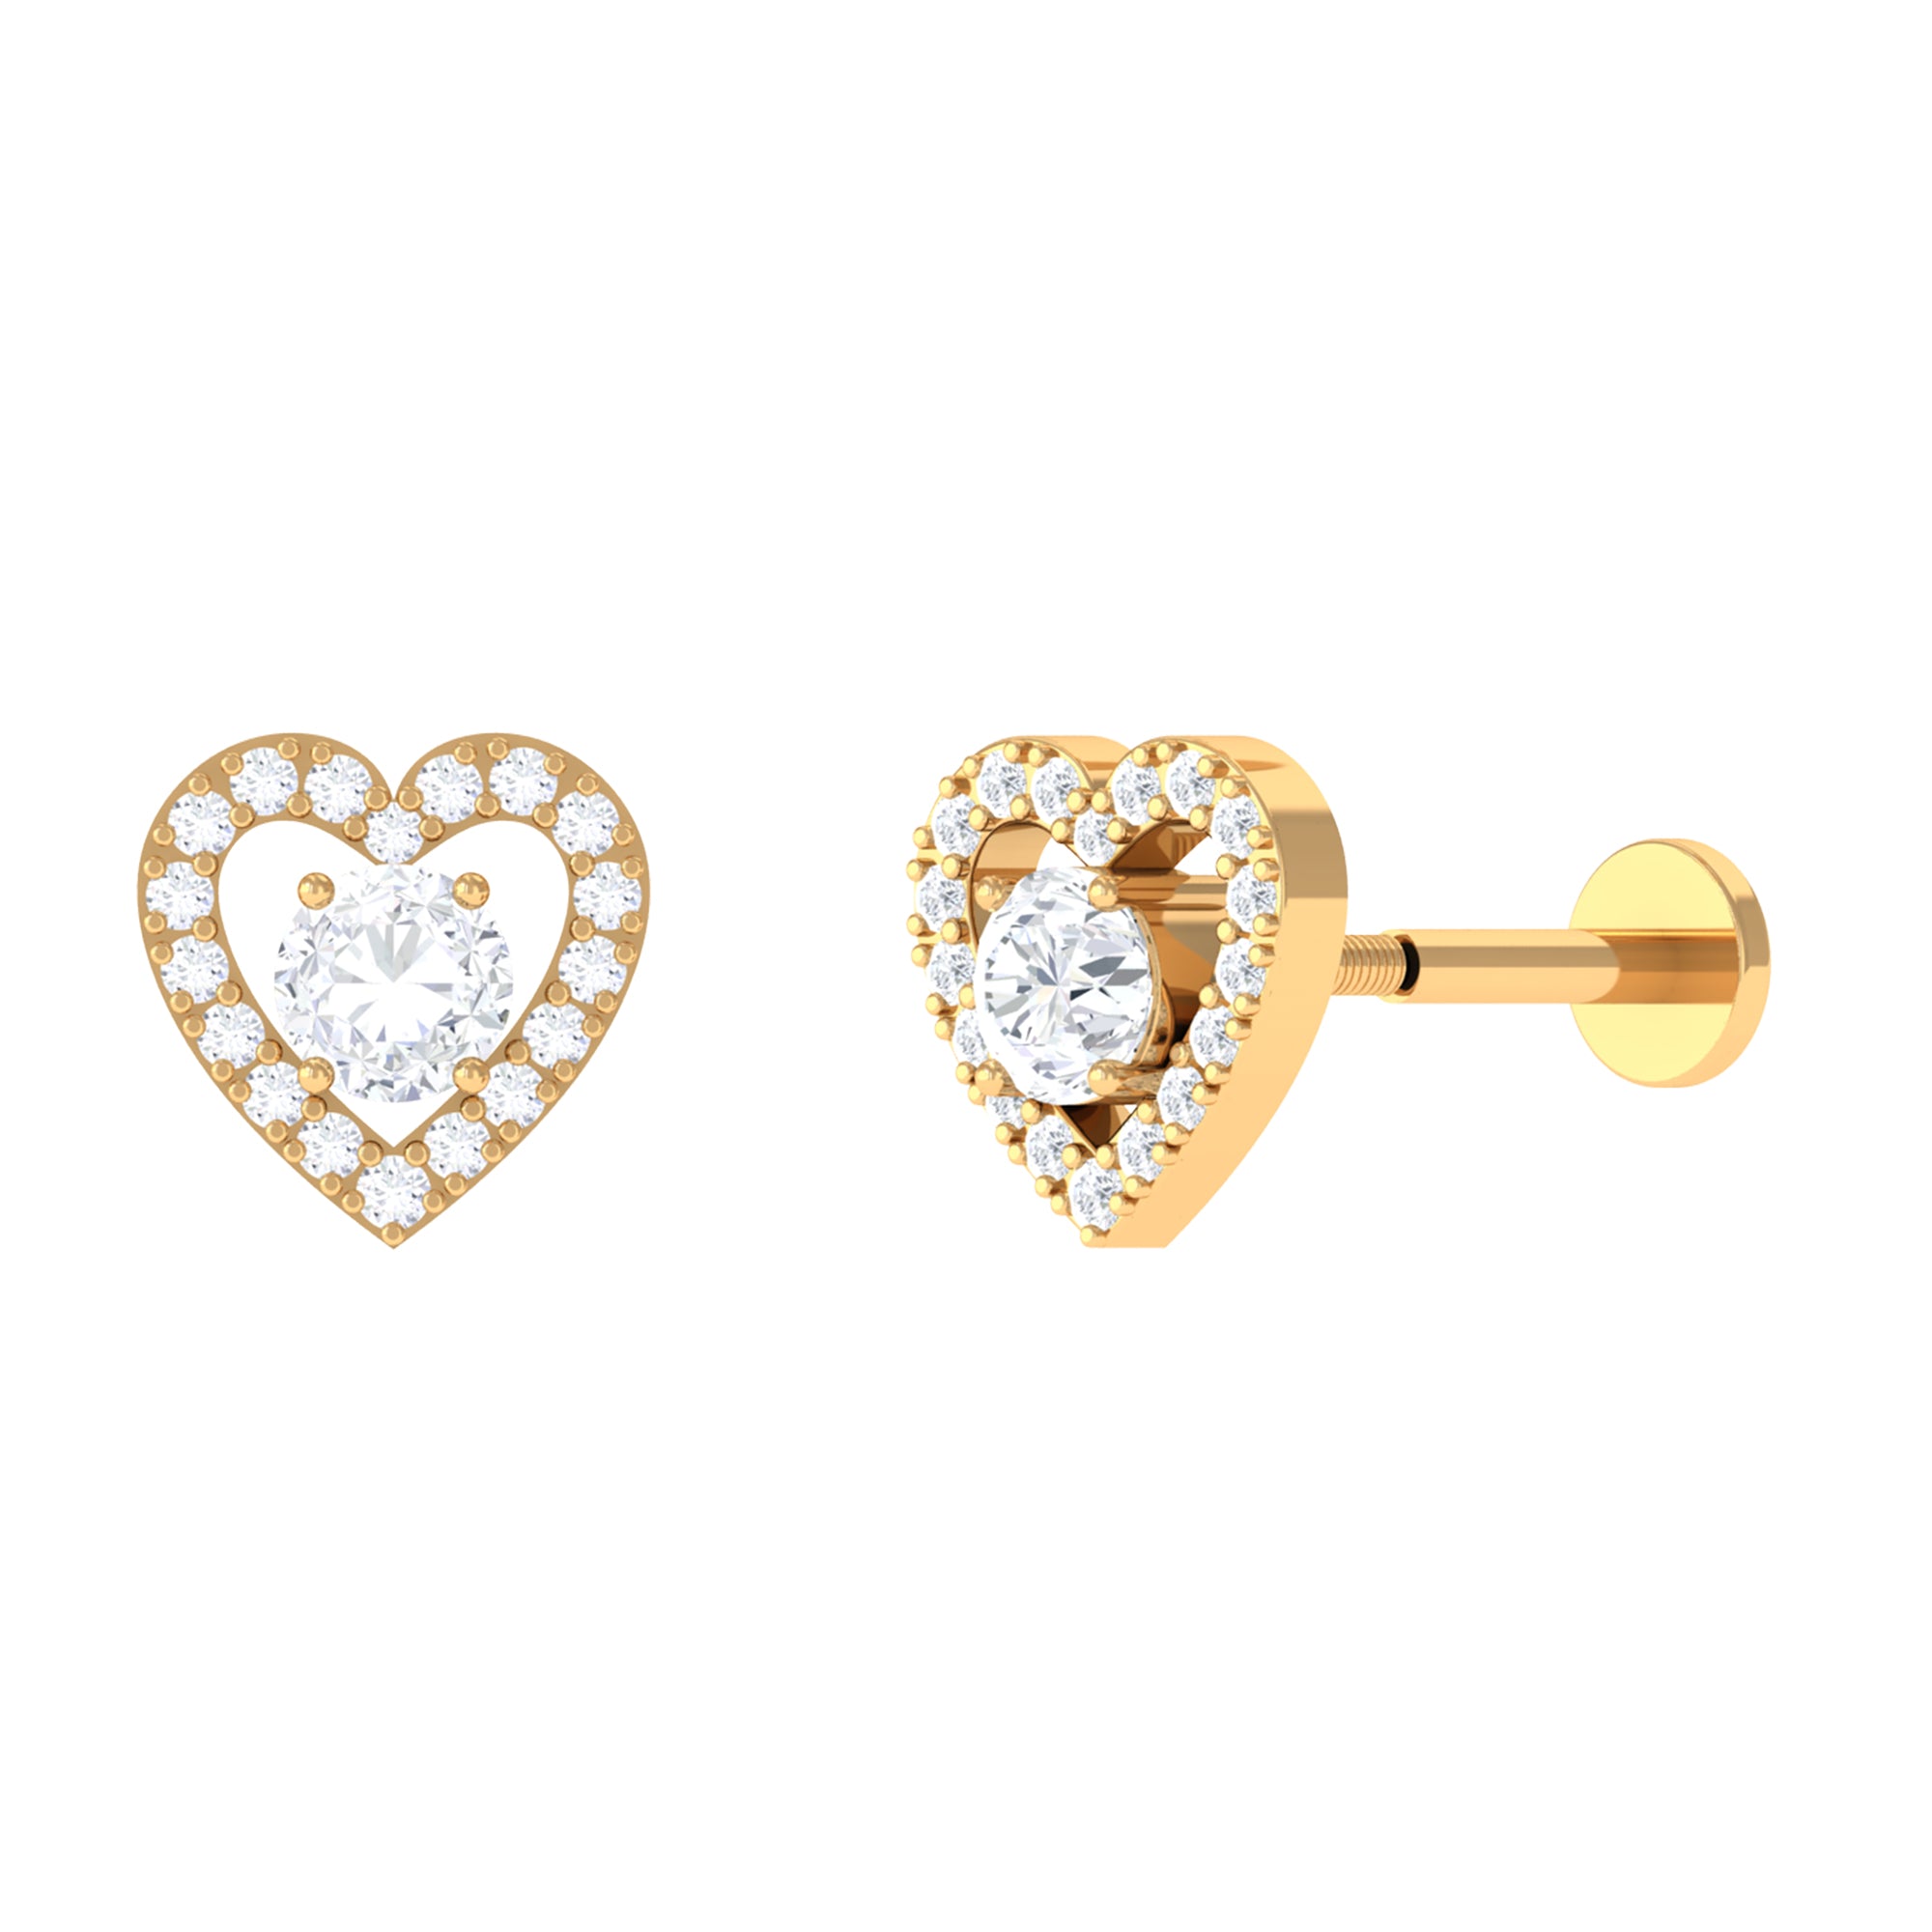 Moissanite Heart Earring for Helix Piercing D-VS1 - Sparkanite Jewels